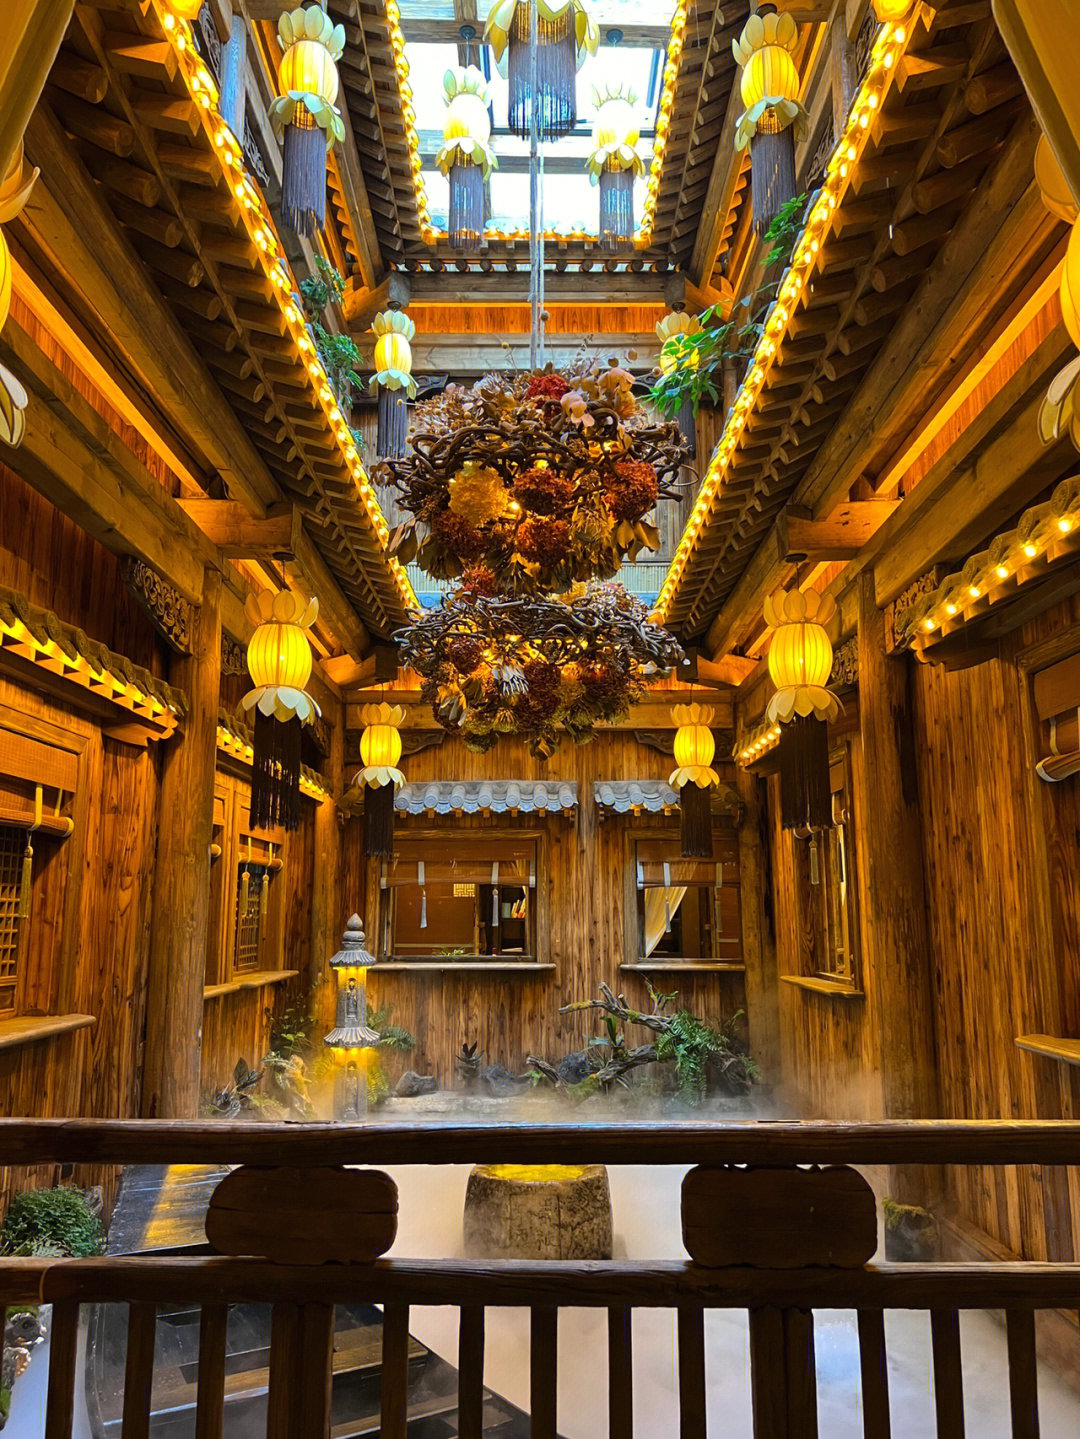 昆山华藏寺素食餐厅图片